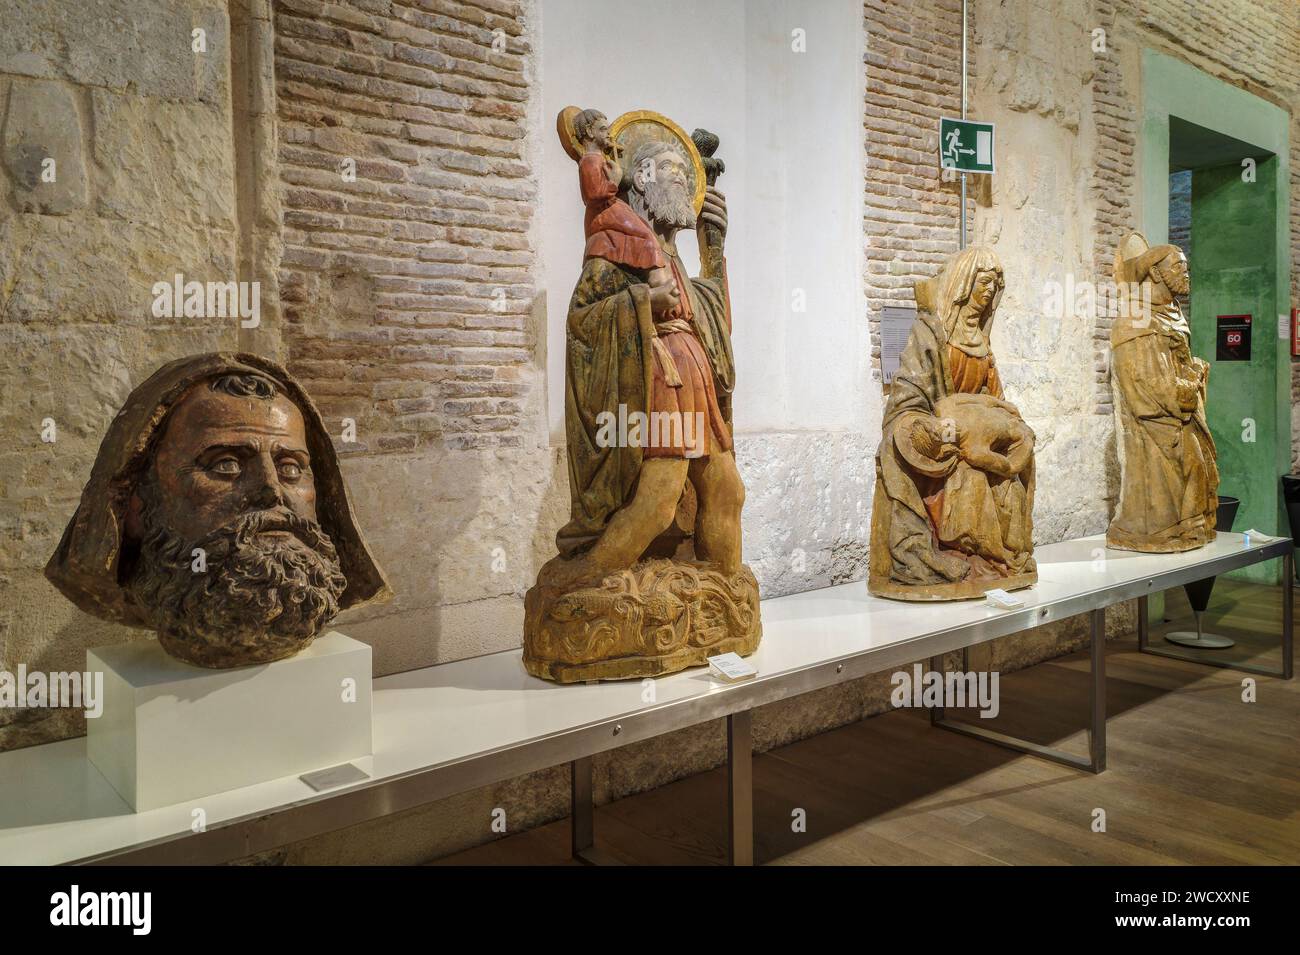 Sculptures anciennes et buste dans le hall d'entrée du musée diocésain de la cathédrale de Santa María dans la ville de Murcie, Espagne, Europe Banque D'Images